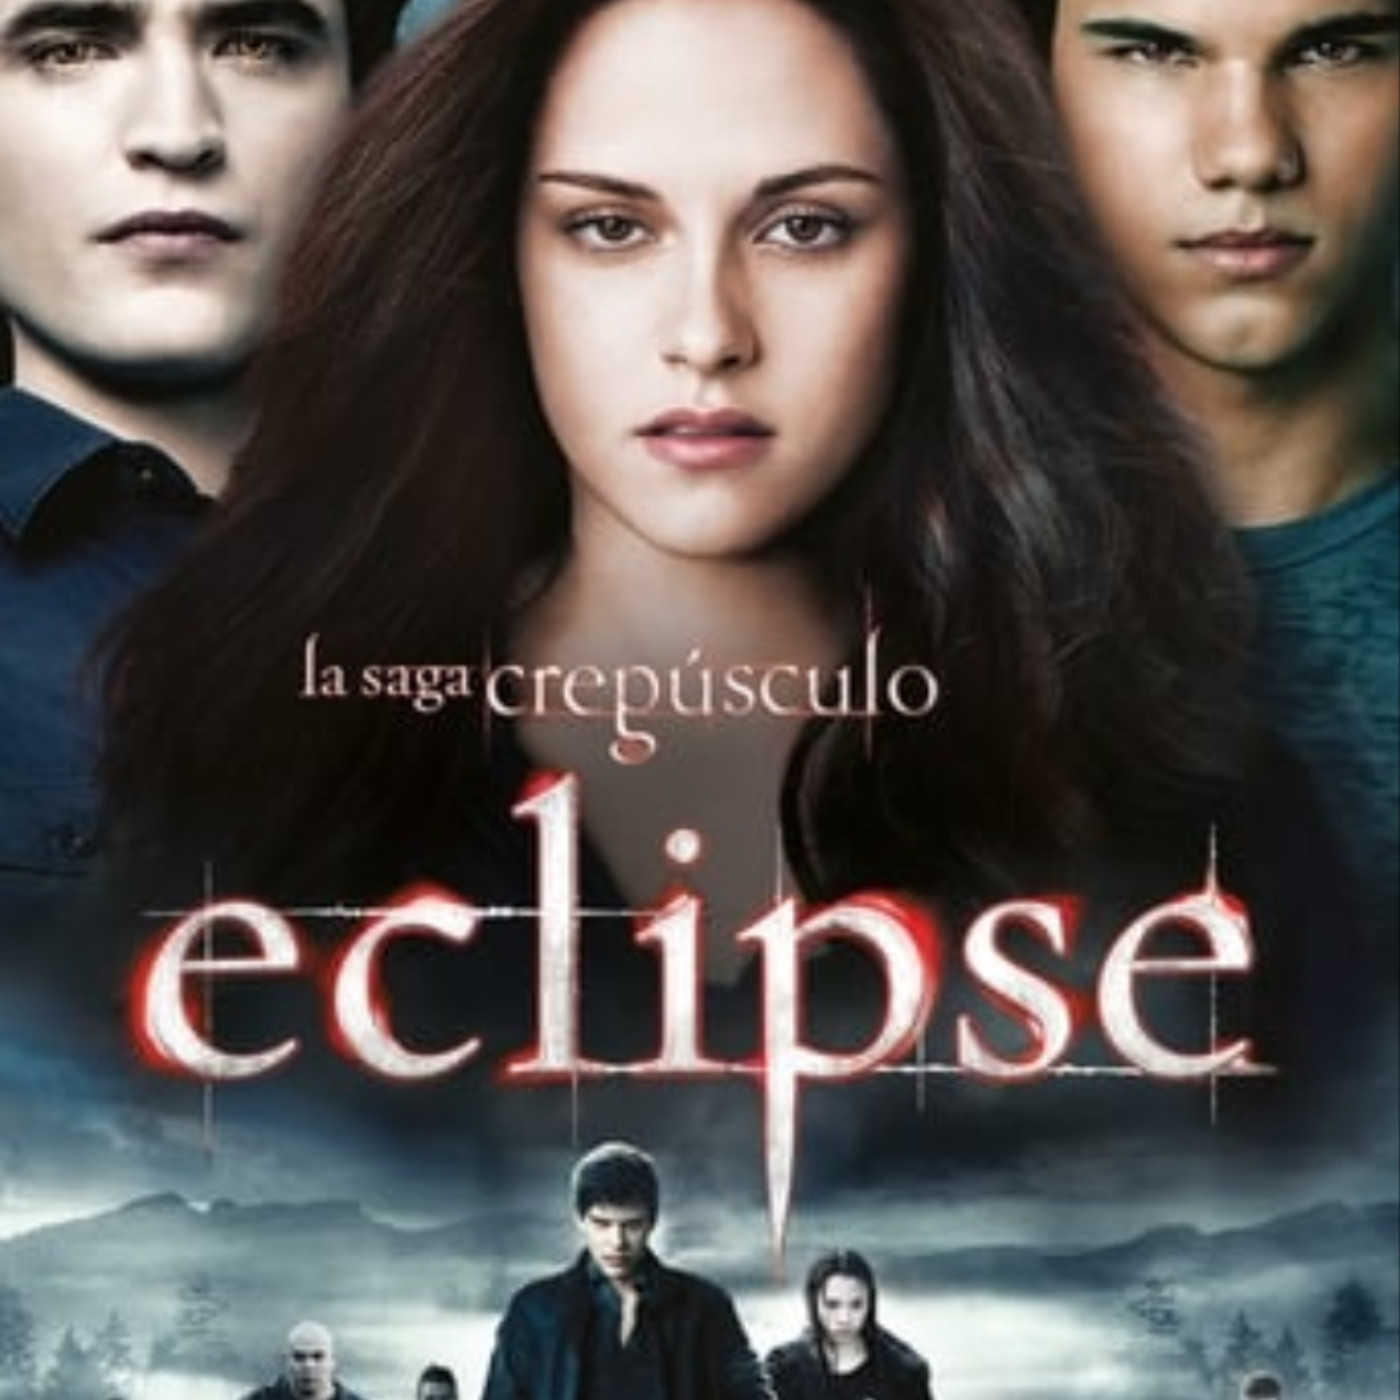 Ver La saga Crepúsculo: Eclipse online gratis en español y latino | Podcast on